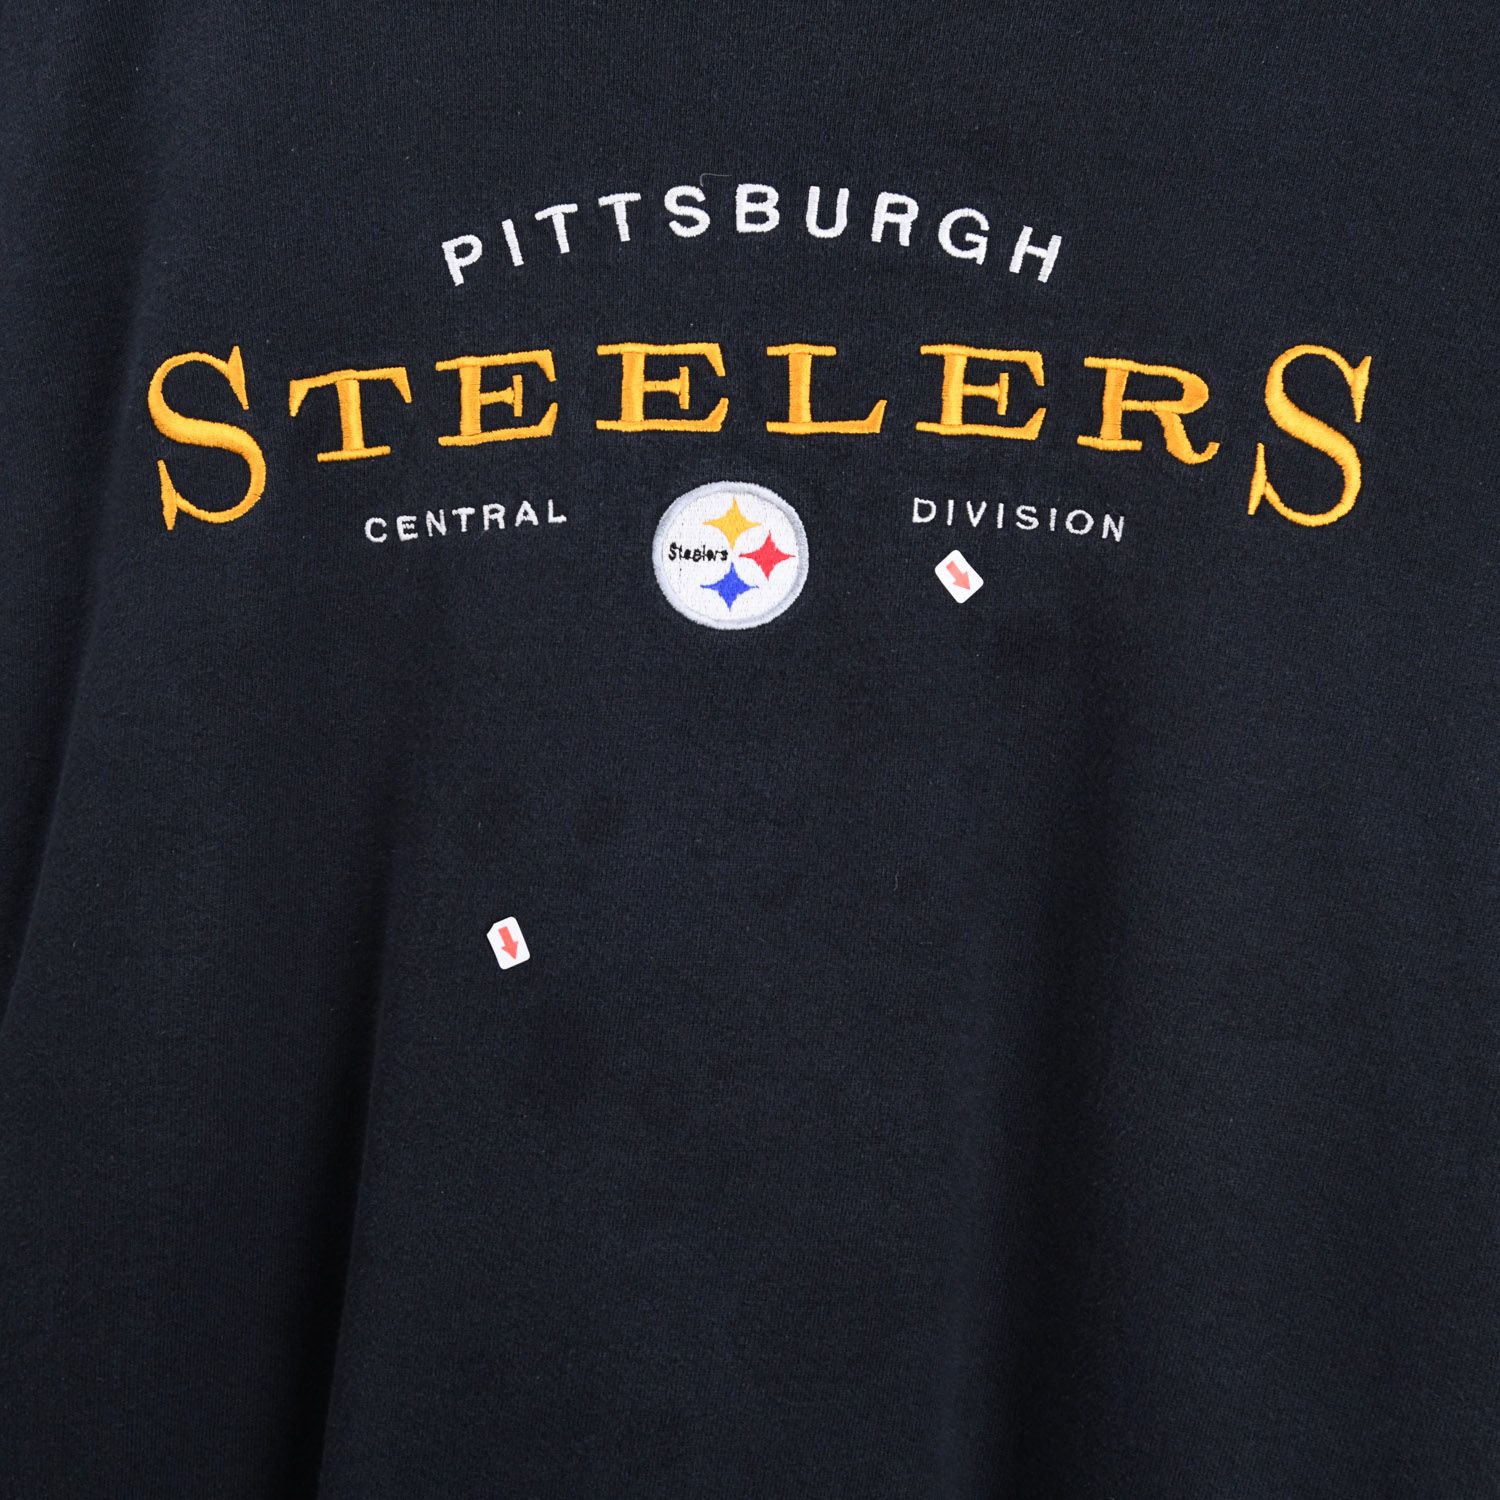 Pittsburgh Steelers X Starter Sweatshirt